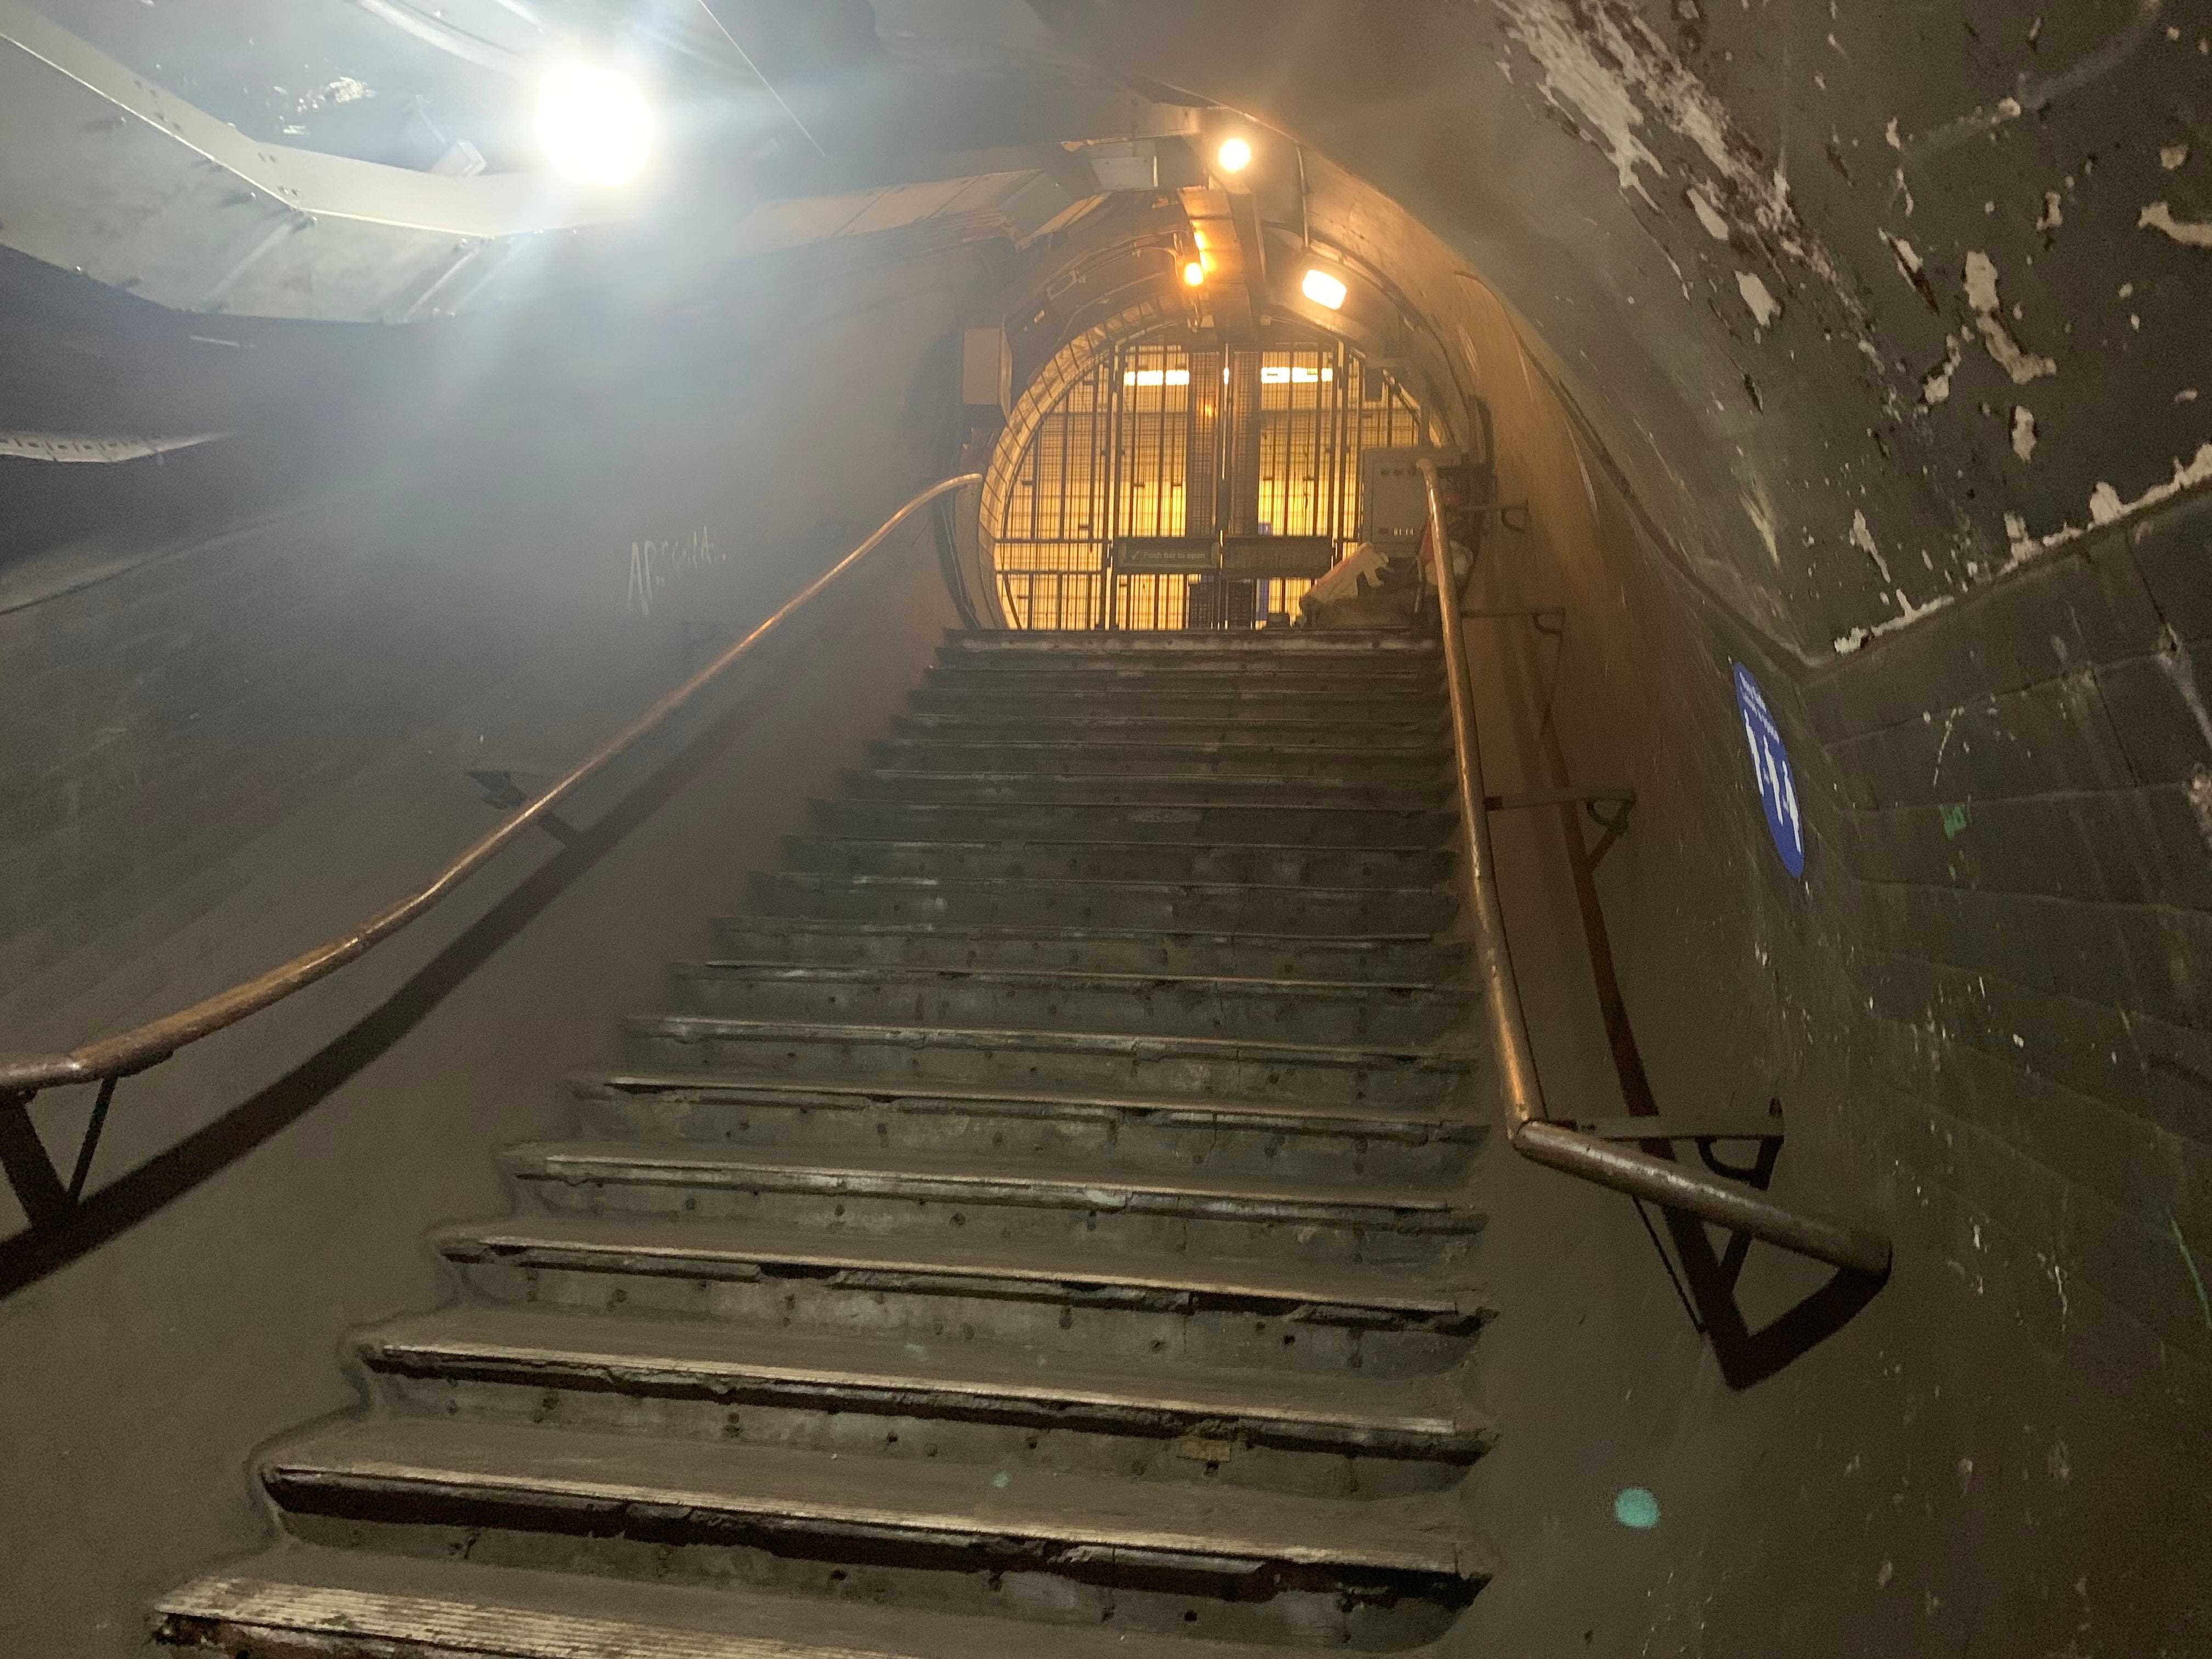 Die Stufen hinunter zu den verlassenen Bahnsteigen am Bahnhof Piccadilly Circus, London.